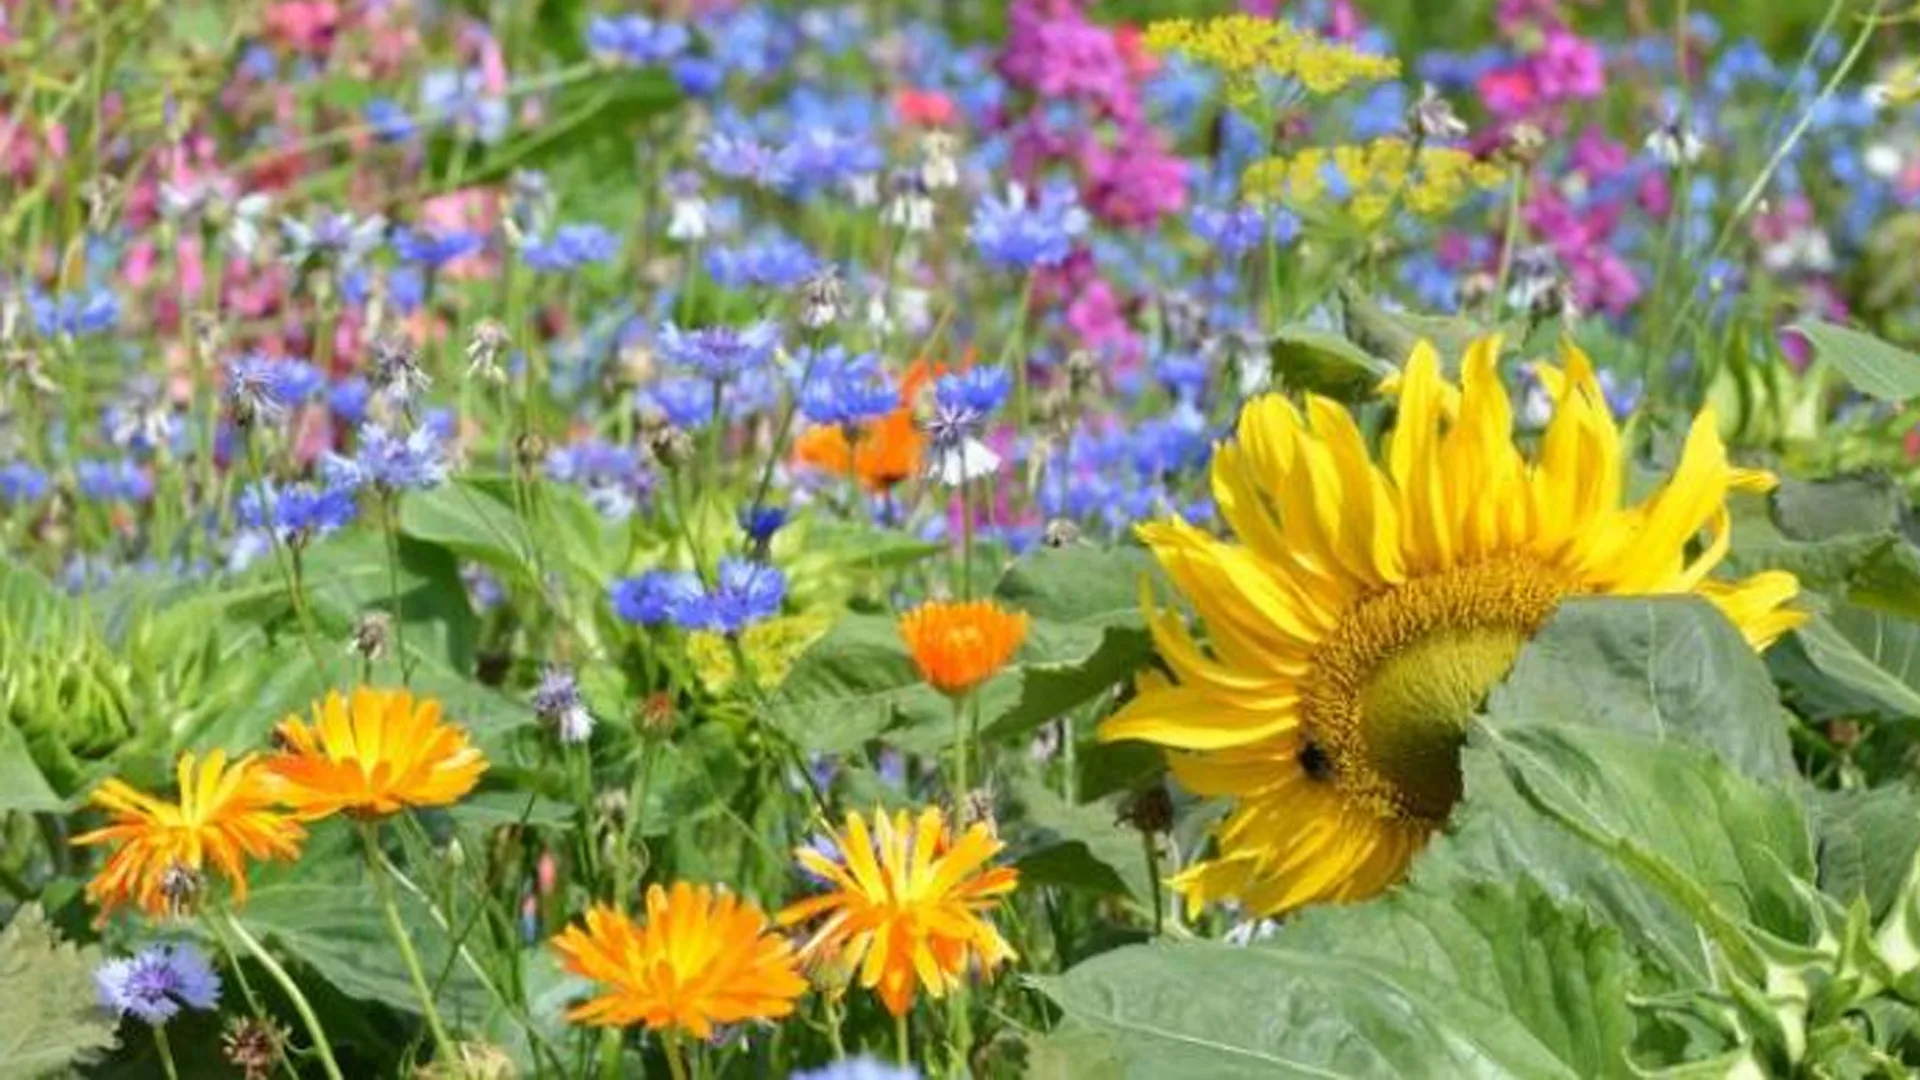 Meer bloemen moeten zorgen voor grotere biodiversiteit in Deurne; inwoners krijgen gratis bloemmengsel | Deurne